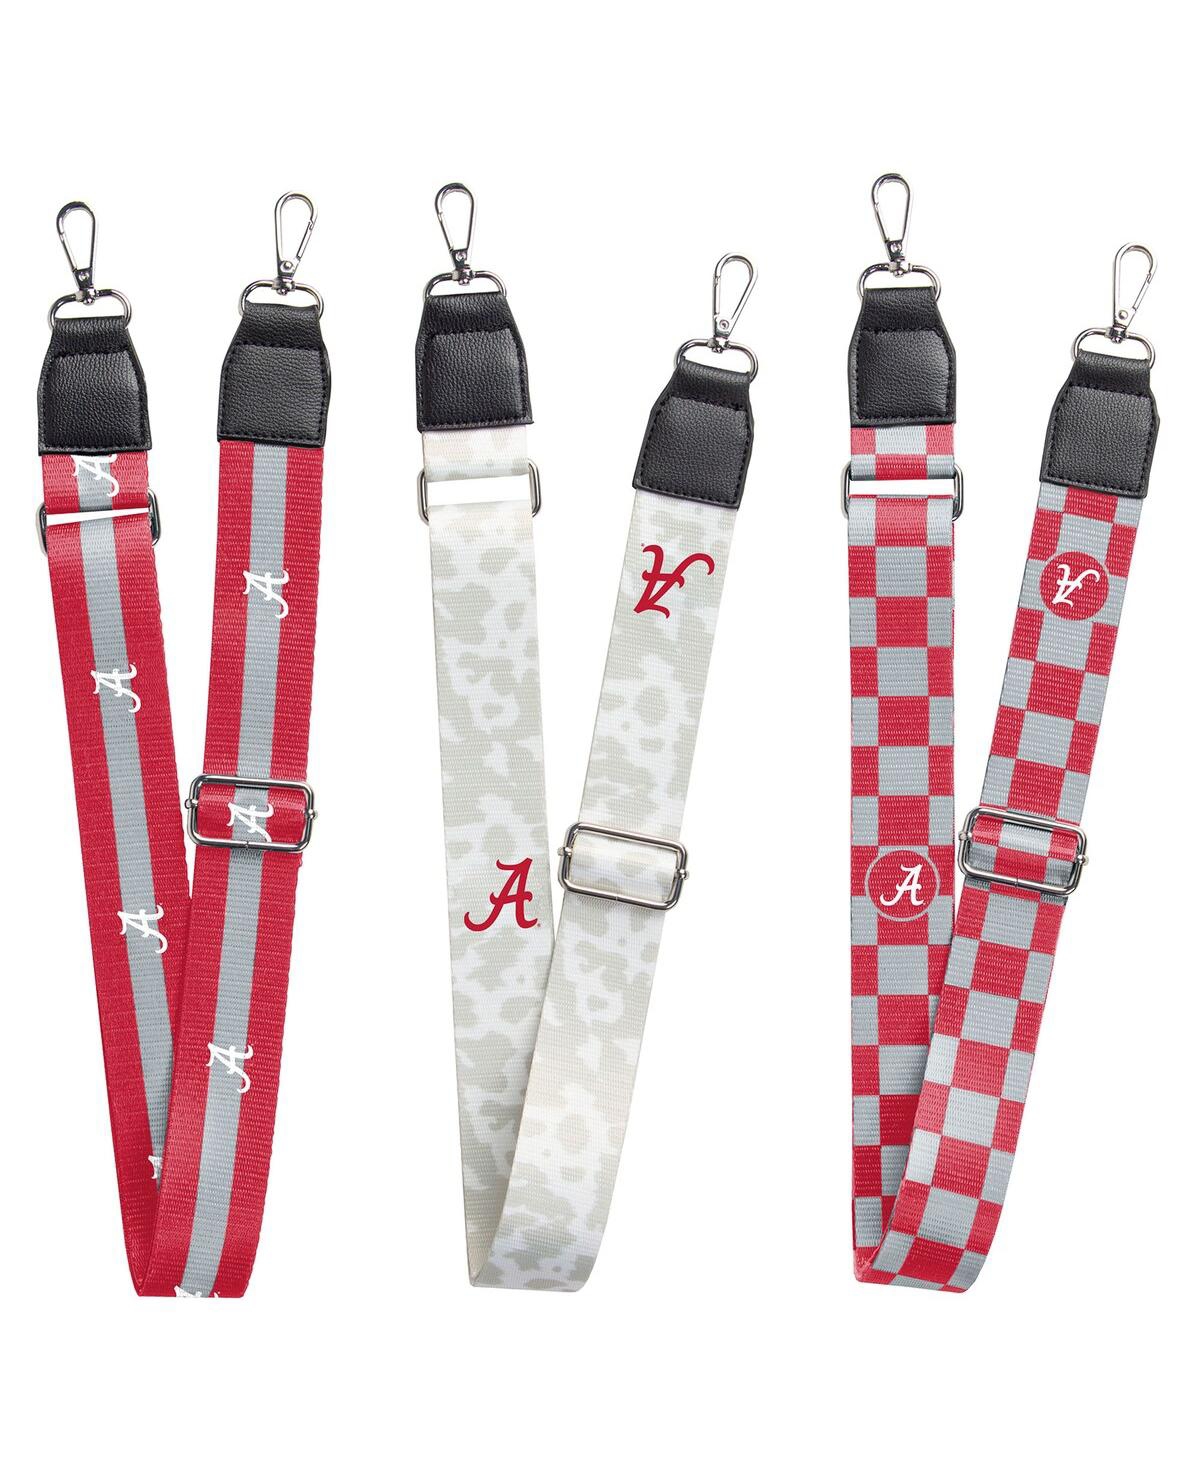 Alabama Crimson Tide 3-Pack Bag Strap Set